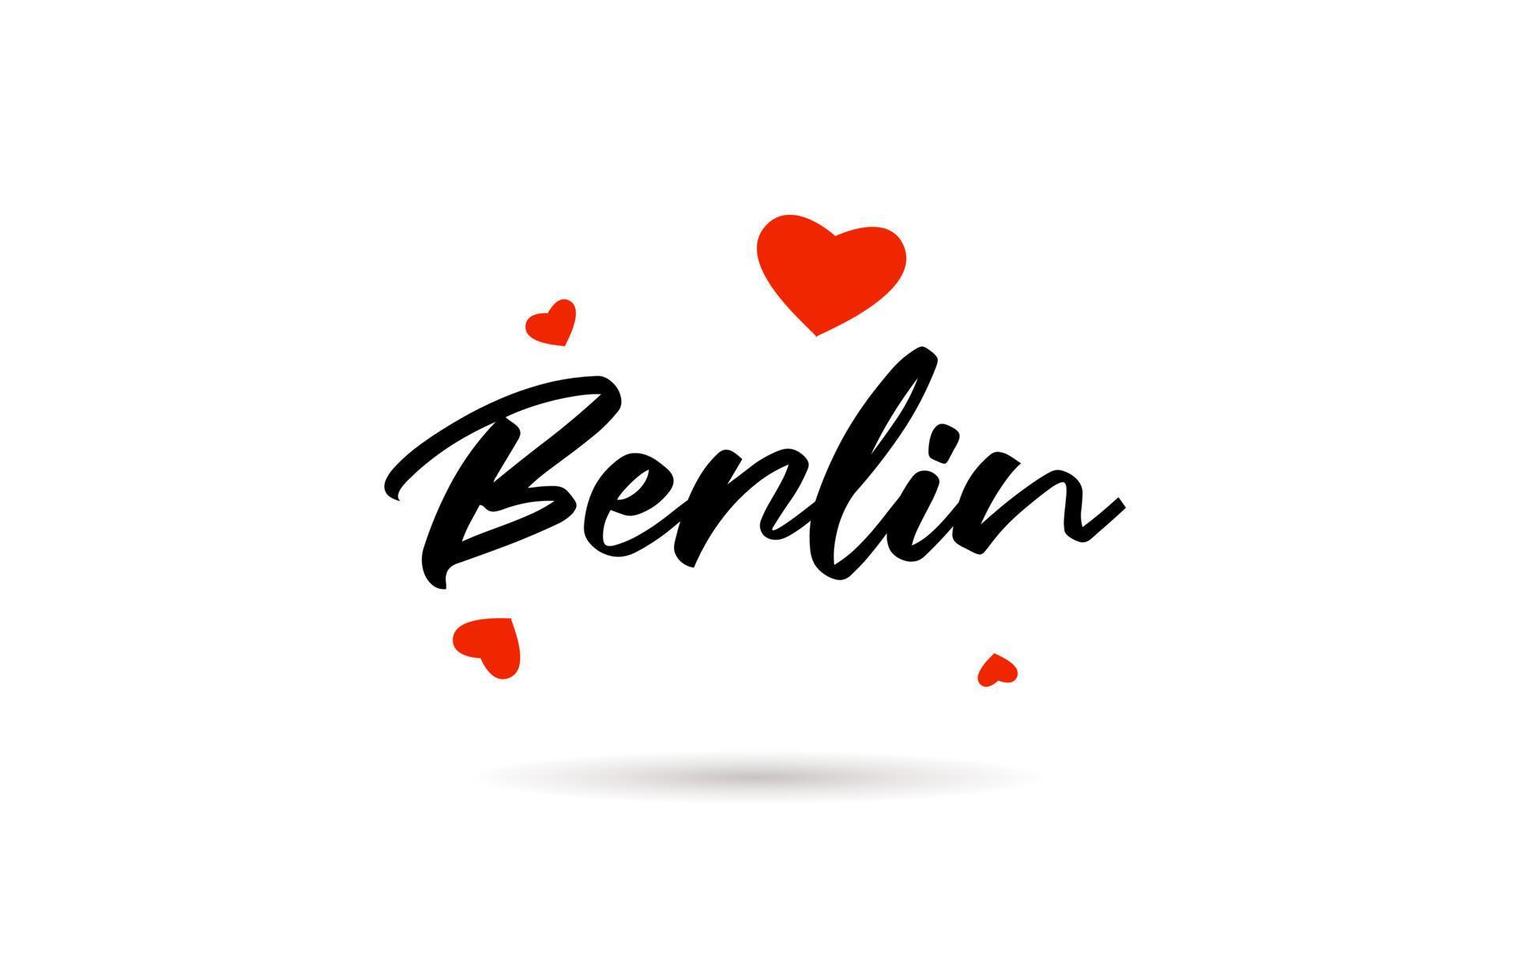 Berlin handwritten city typography text with love heart vector